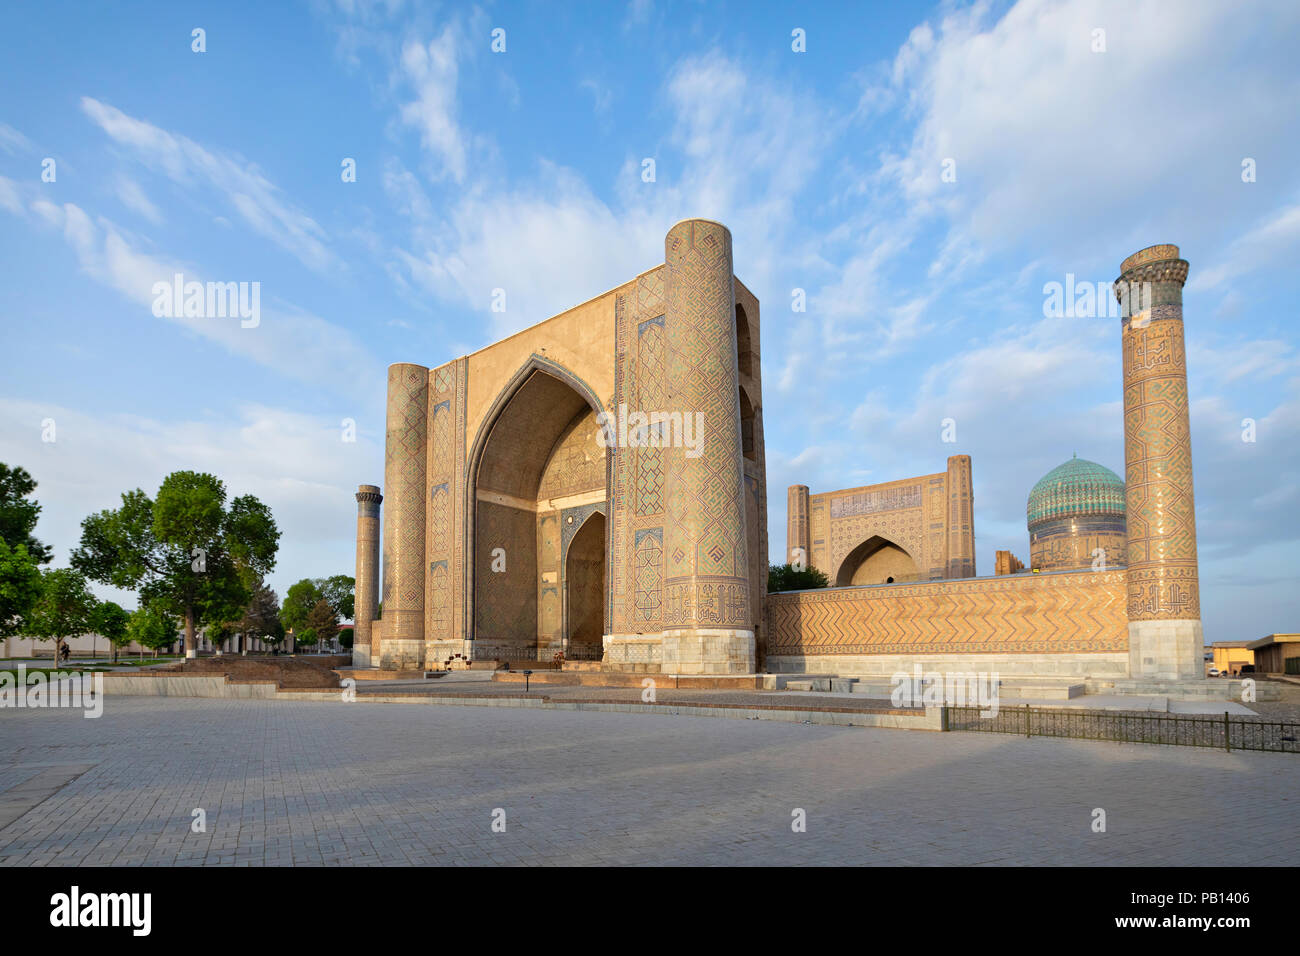 La Moschea Bibi-Khanym in Smarkand, Uzbekistan Foto Stock